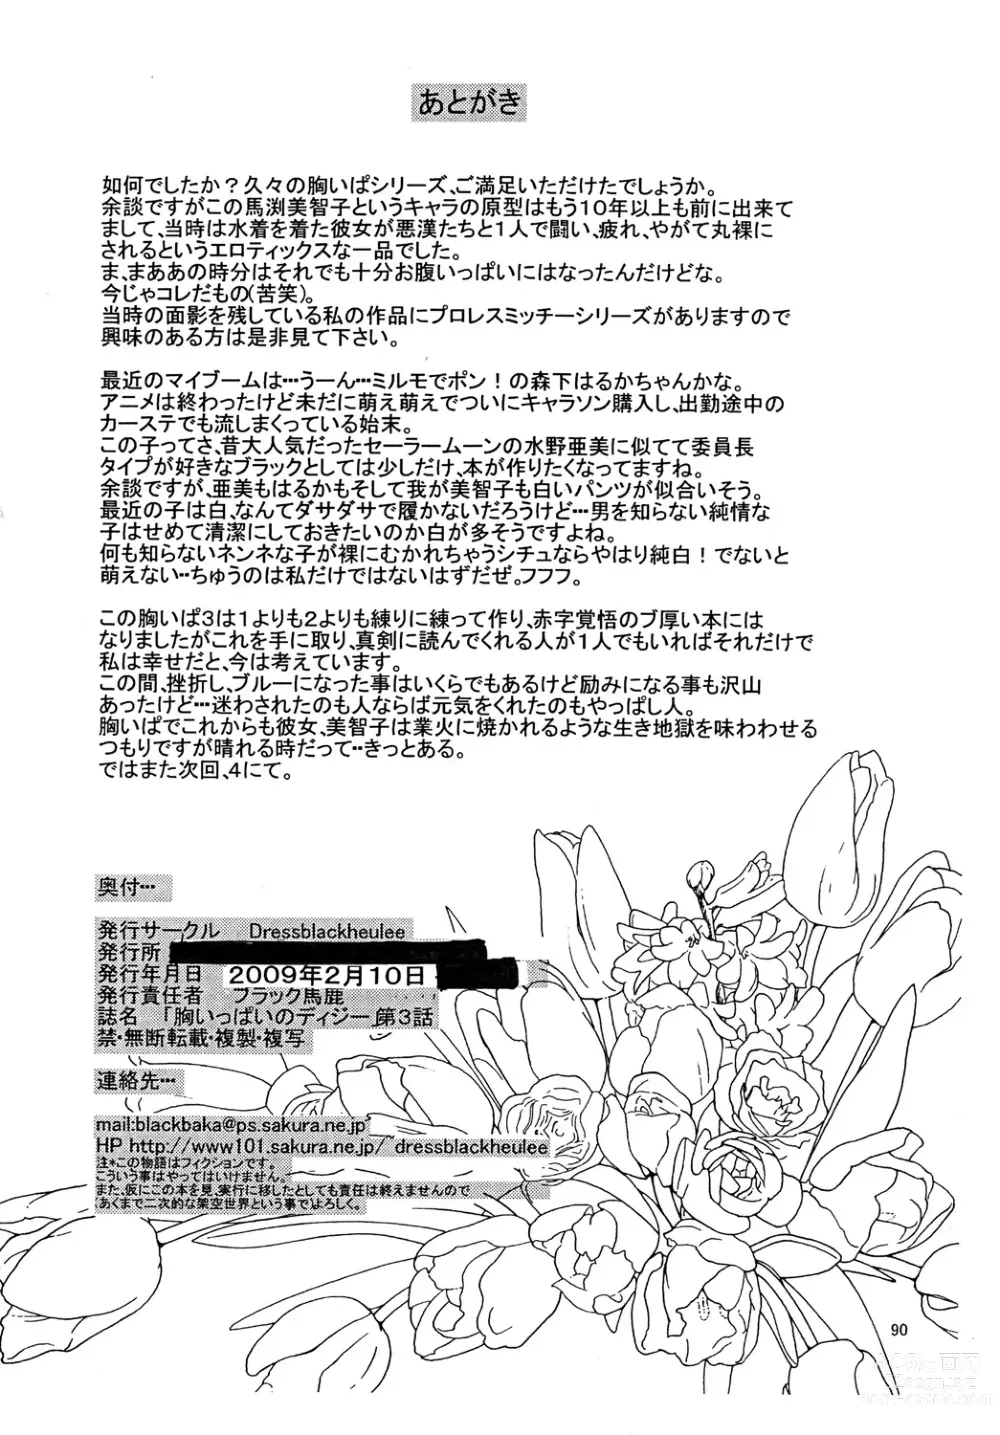 Page 89 of doujinshi Mune Ippai no Dizzy